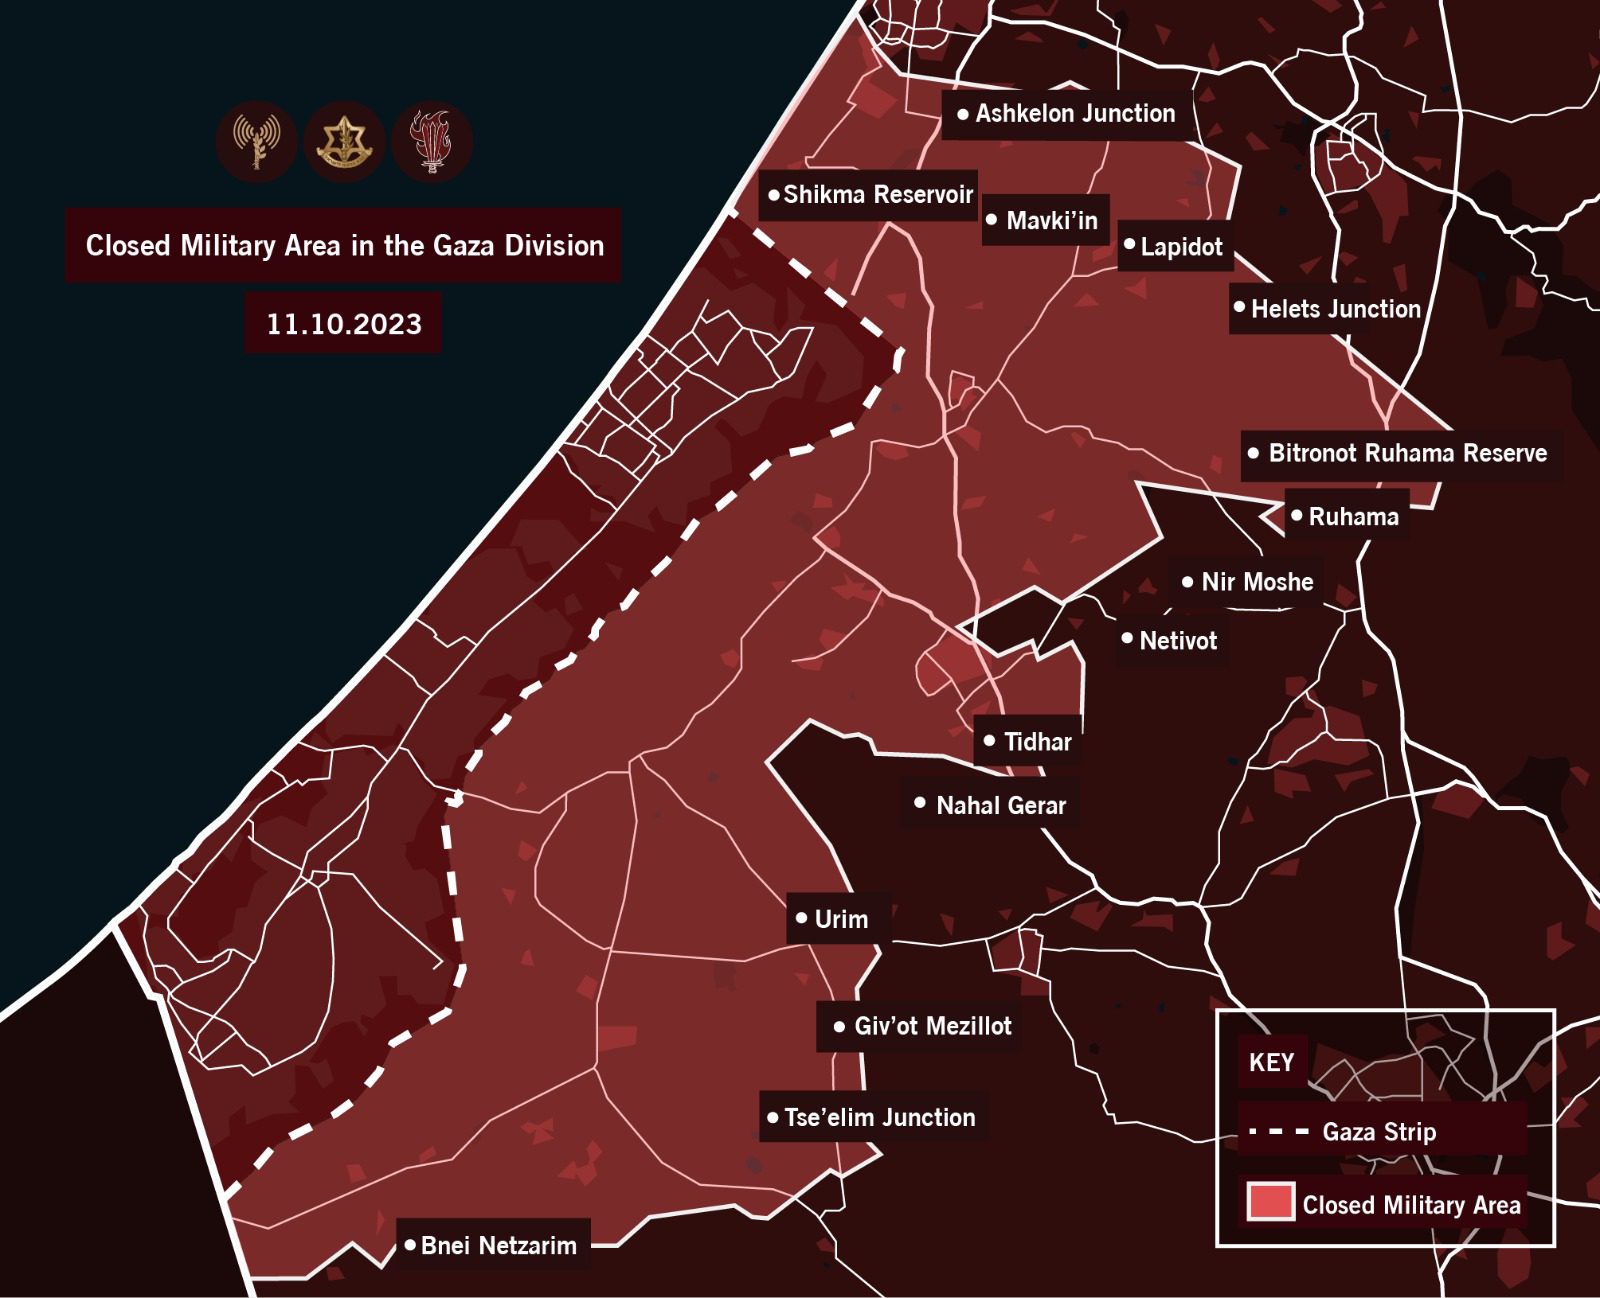 Τρόπους επέκτασης της παύσης πυρός στη Γάζα εξετάζουν το Κατάρ και η Αίγυπτος